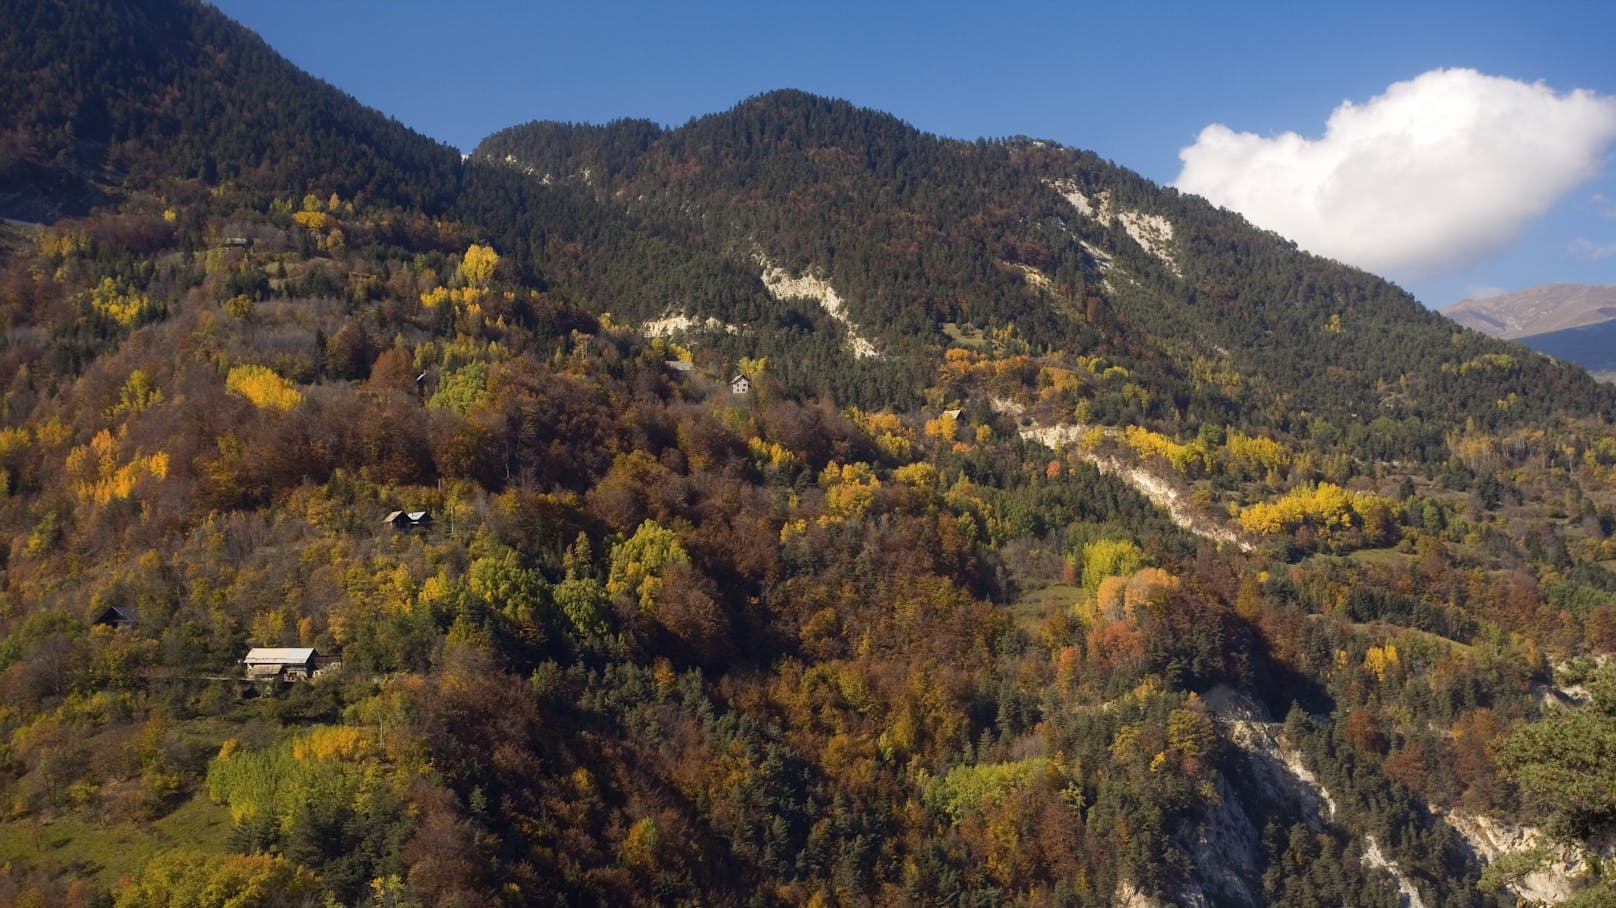 Das Belledonne-Massiv ist ein Ausläufer der französischen Alpen, als größere Stadt liegt Grenoble in der Nähe.